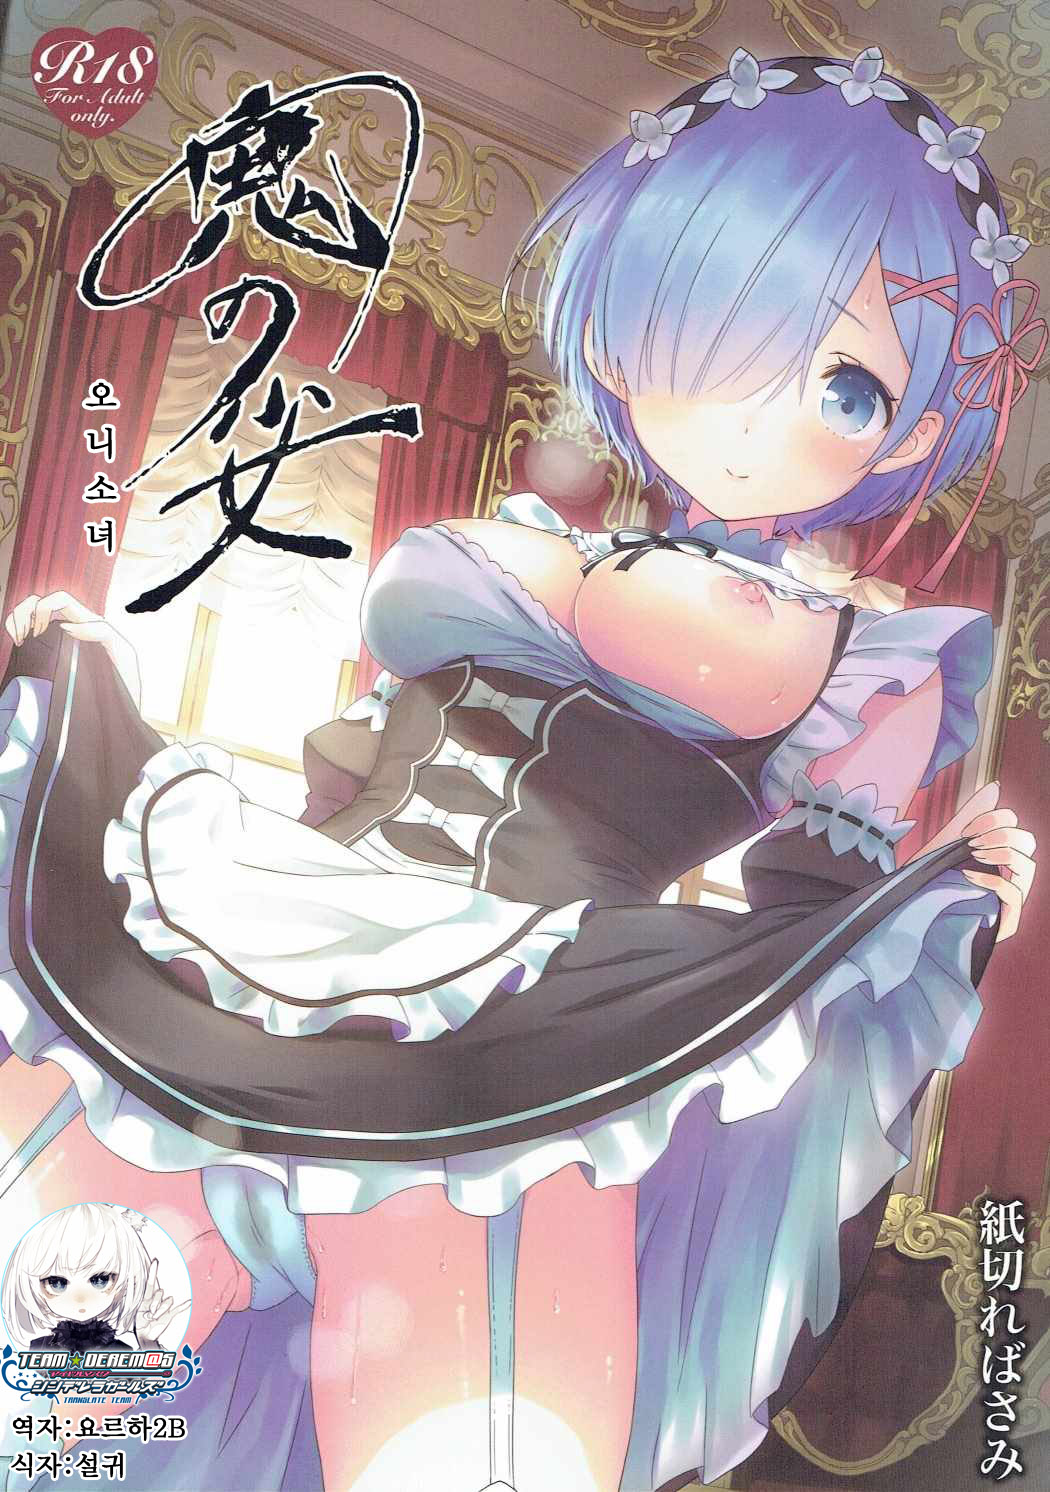 Read C91 Kamikire Basami Yasuyuki Oni No Shoujo